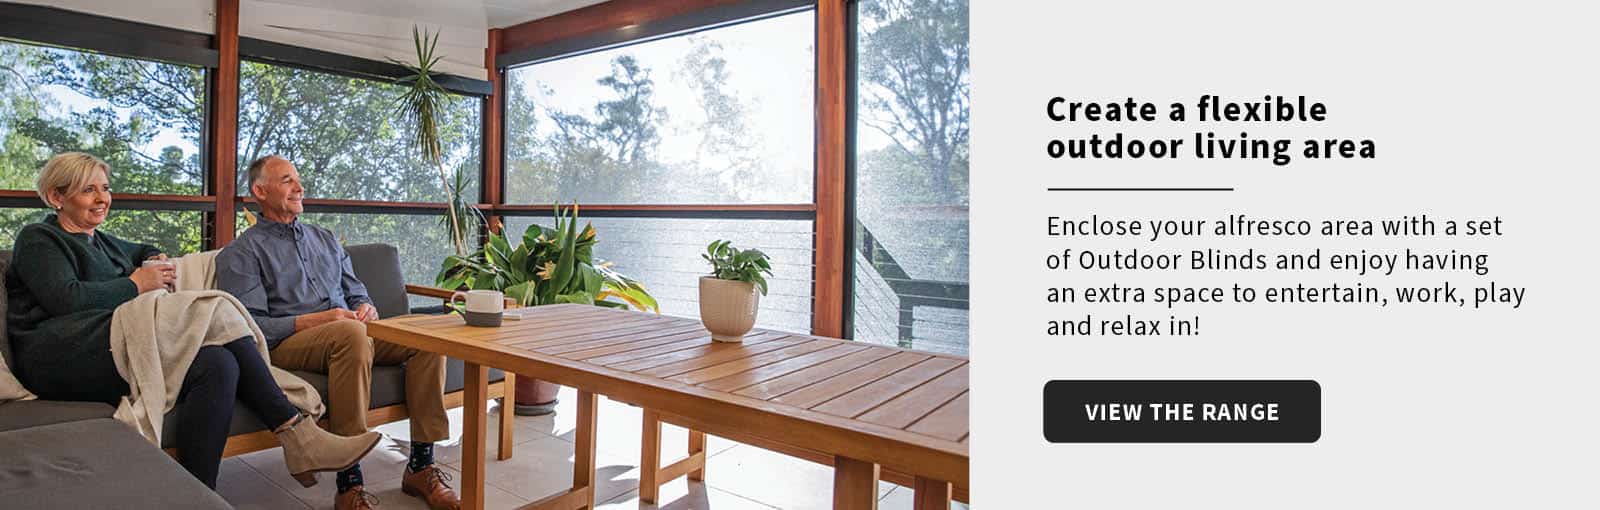 create a flexible outdoor living space